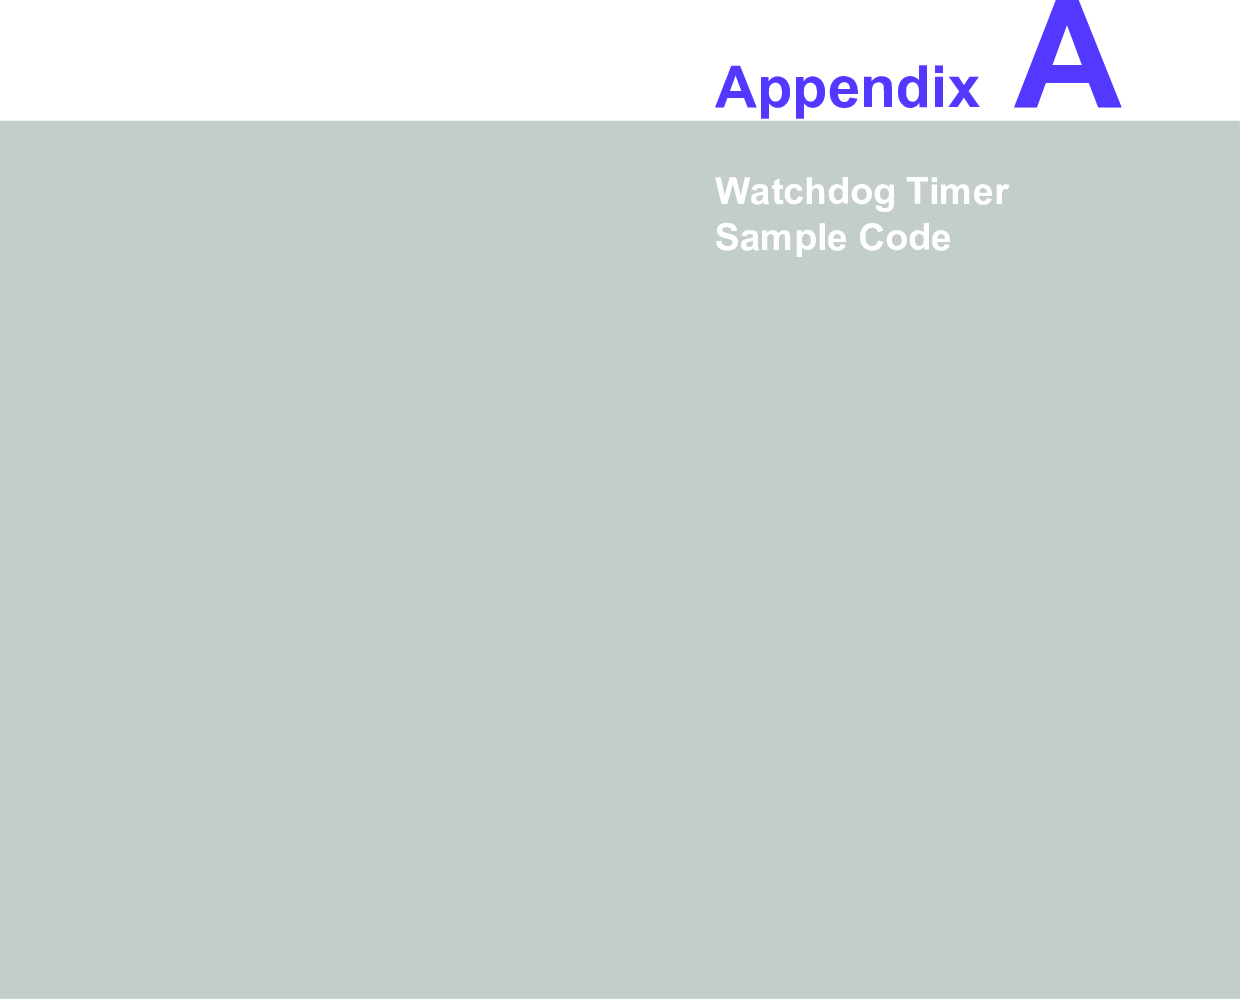 Appendix AAWatchdog Timer Sample Code 